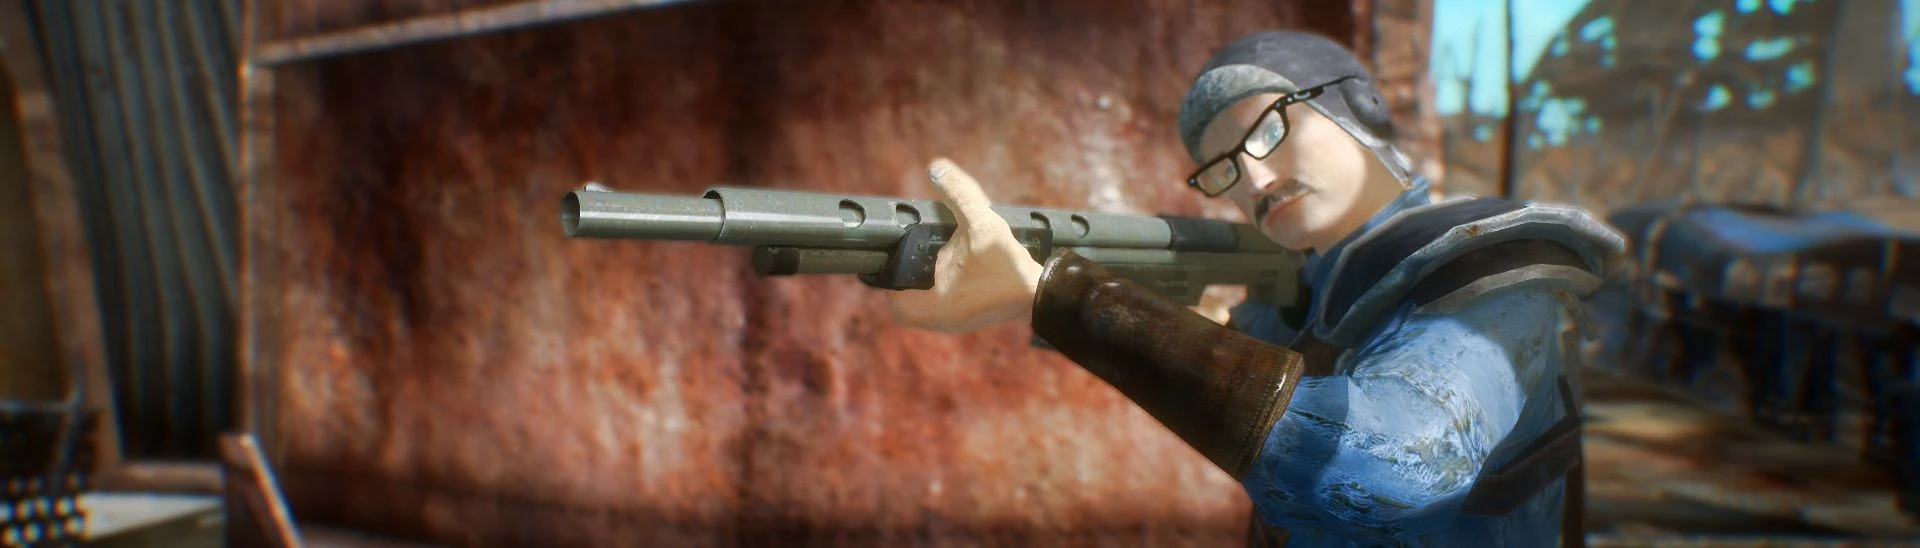 Classic Combat Shotgun Replacer for the Combat Shotgun at Fallout 3 ...